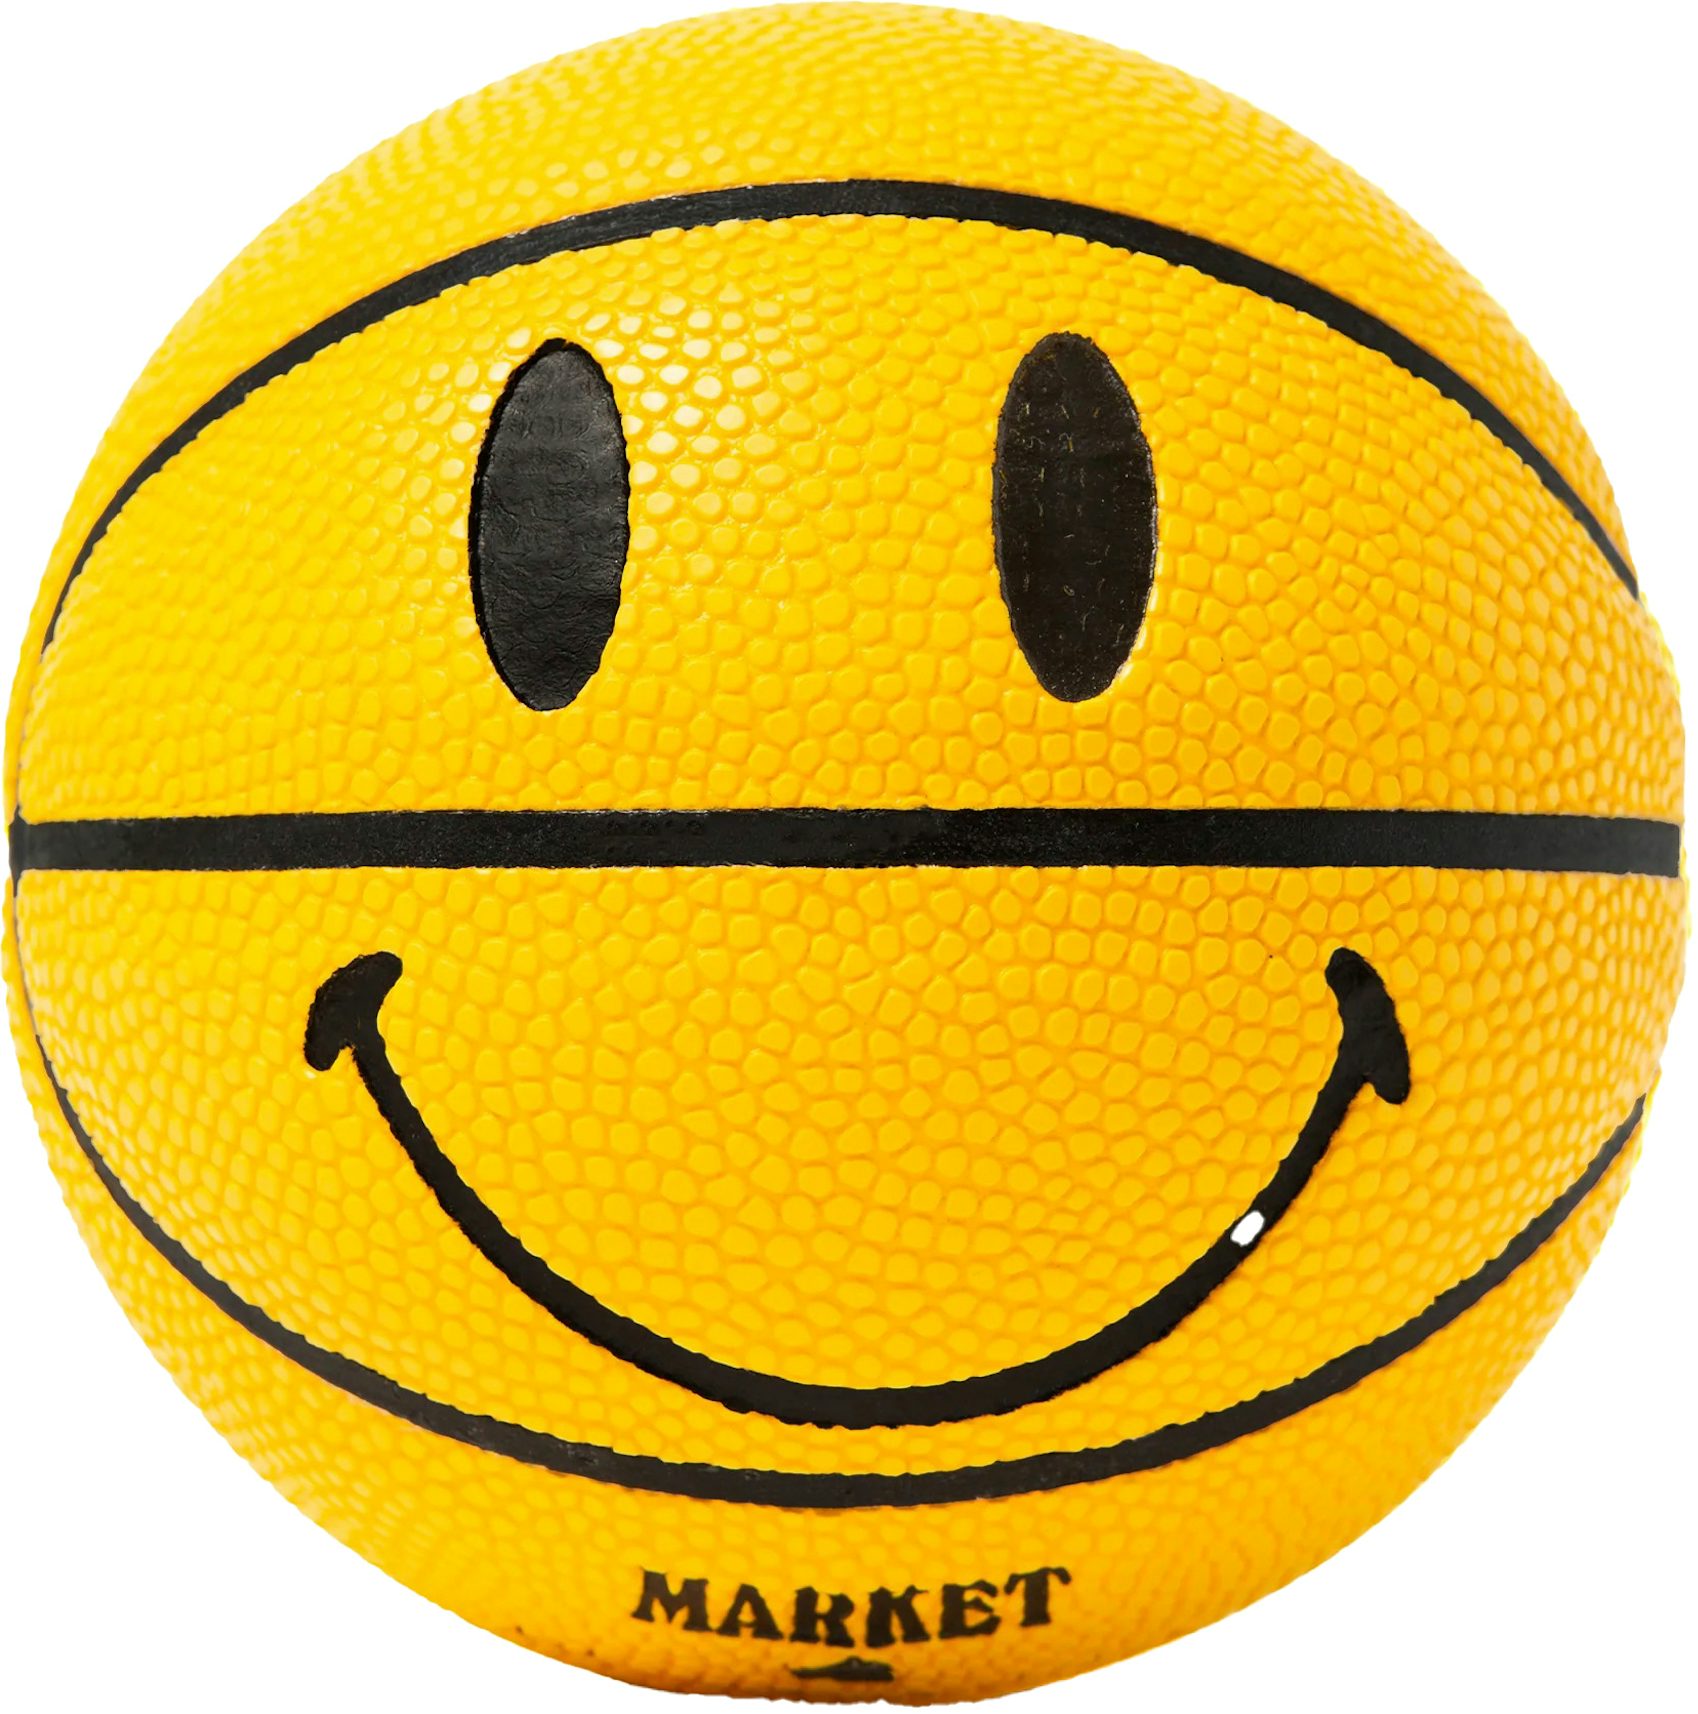 Market Mini Smiley Basketball Yellow - FW22 - US